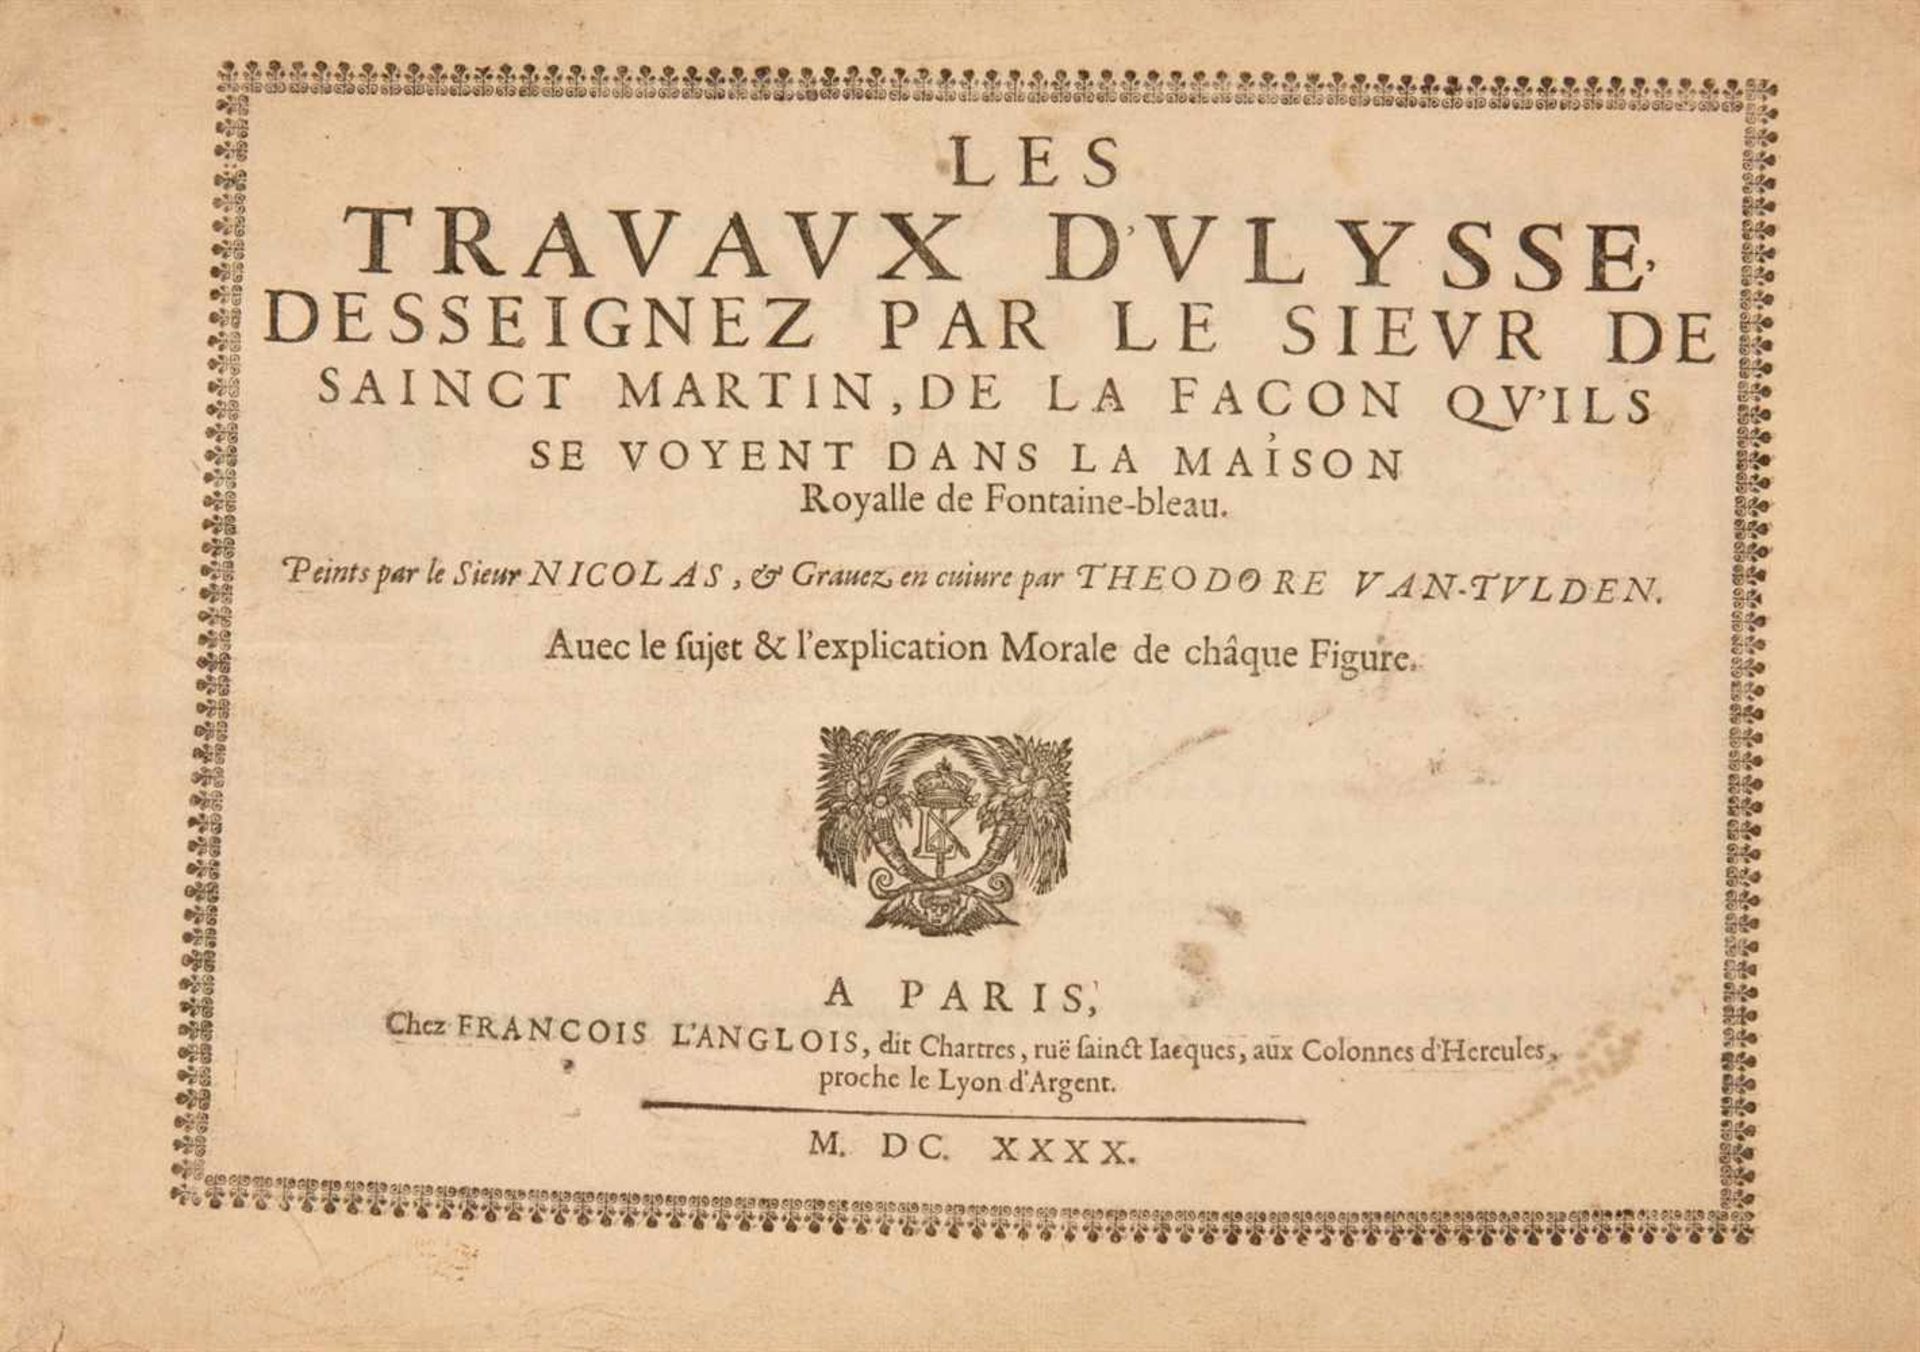 THEODOR VAN THULDEN's-Hertogenbosch1606-1669 Les Travaux d'Ulysse. 1640. Kupferstichfolge mit